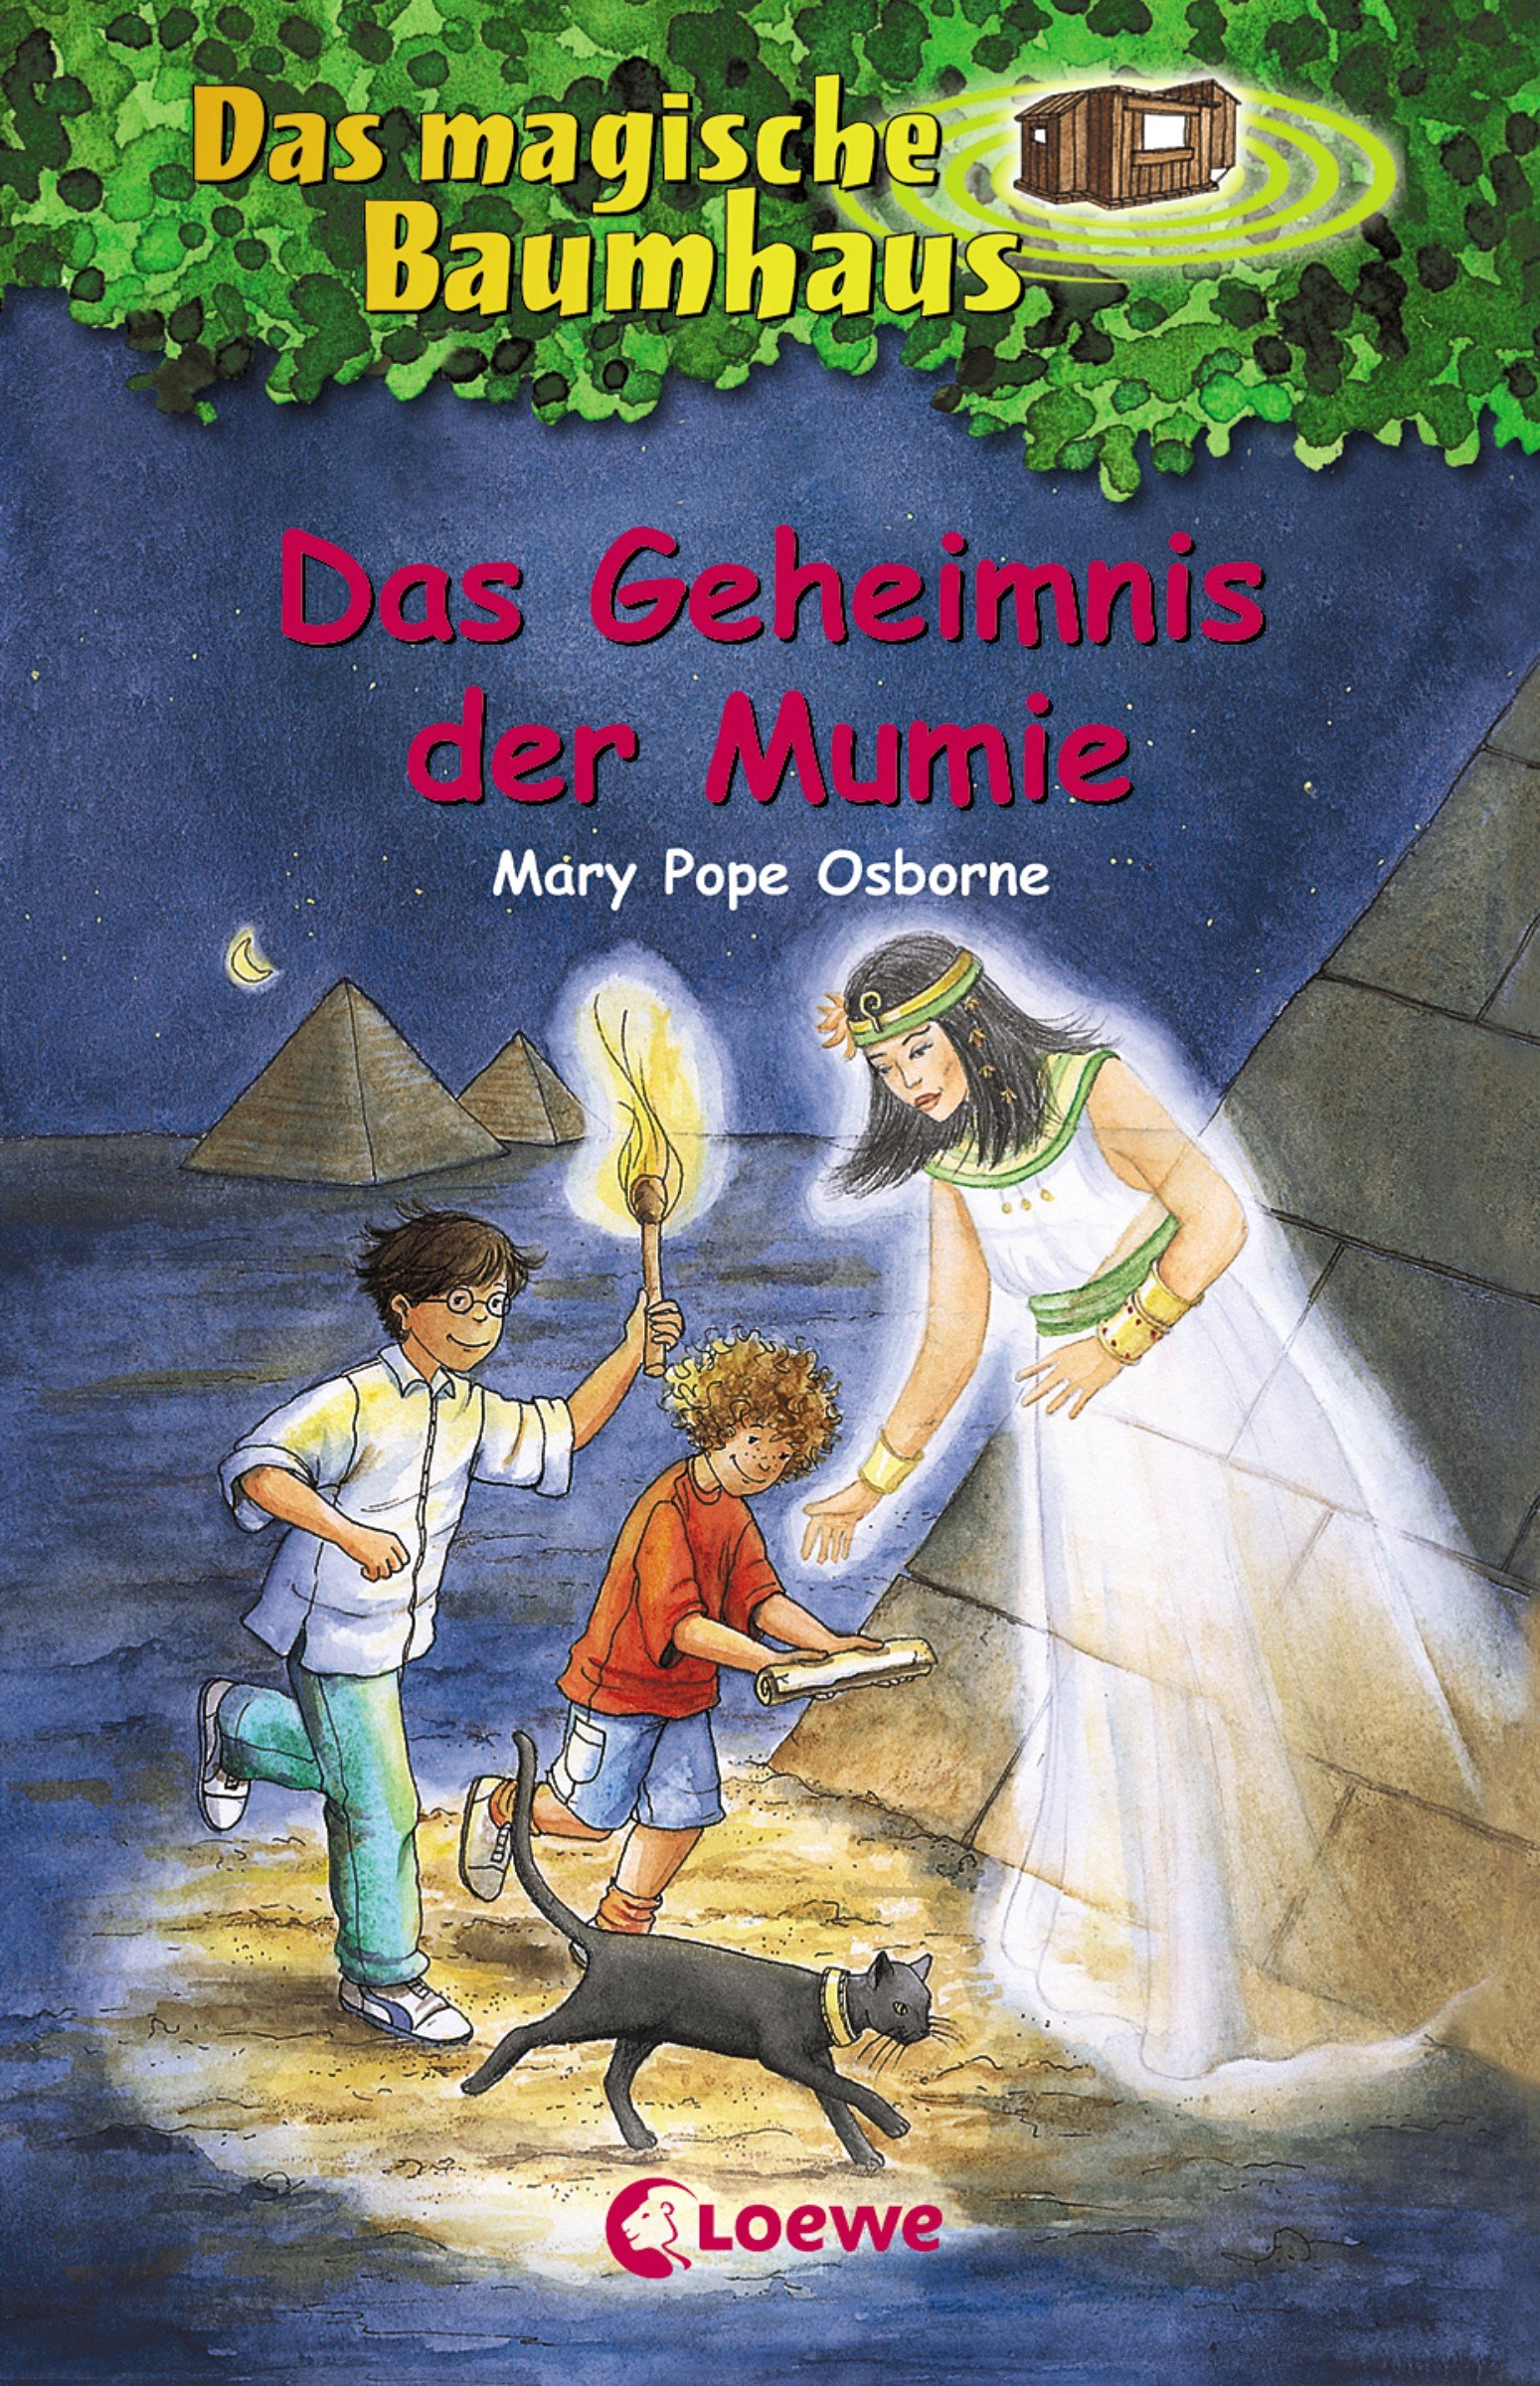 Das magische Baumhaus (Band 3) - Das Geheimnis der Mumie (German Edition)